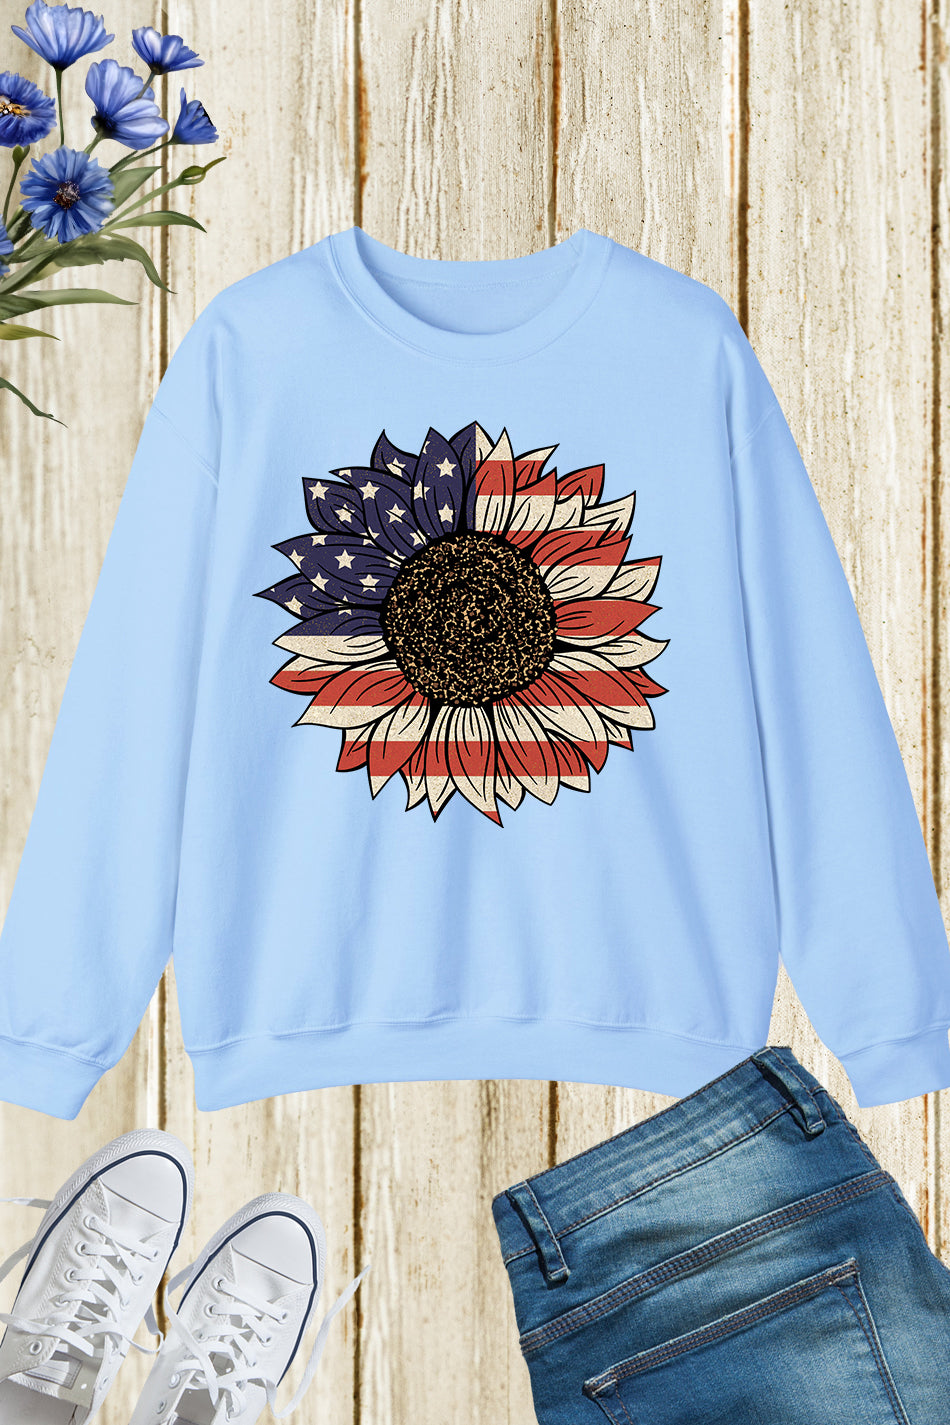 America Sunflower Memorial Day Sweatshirts